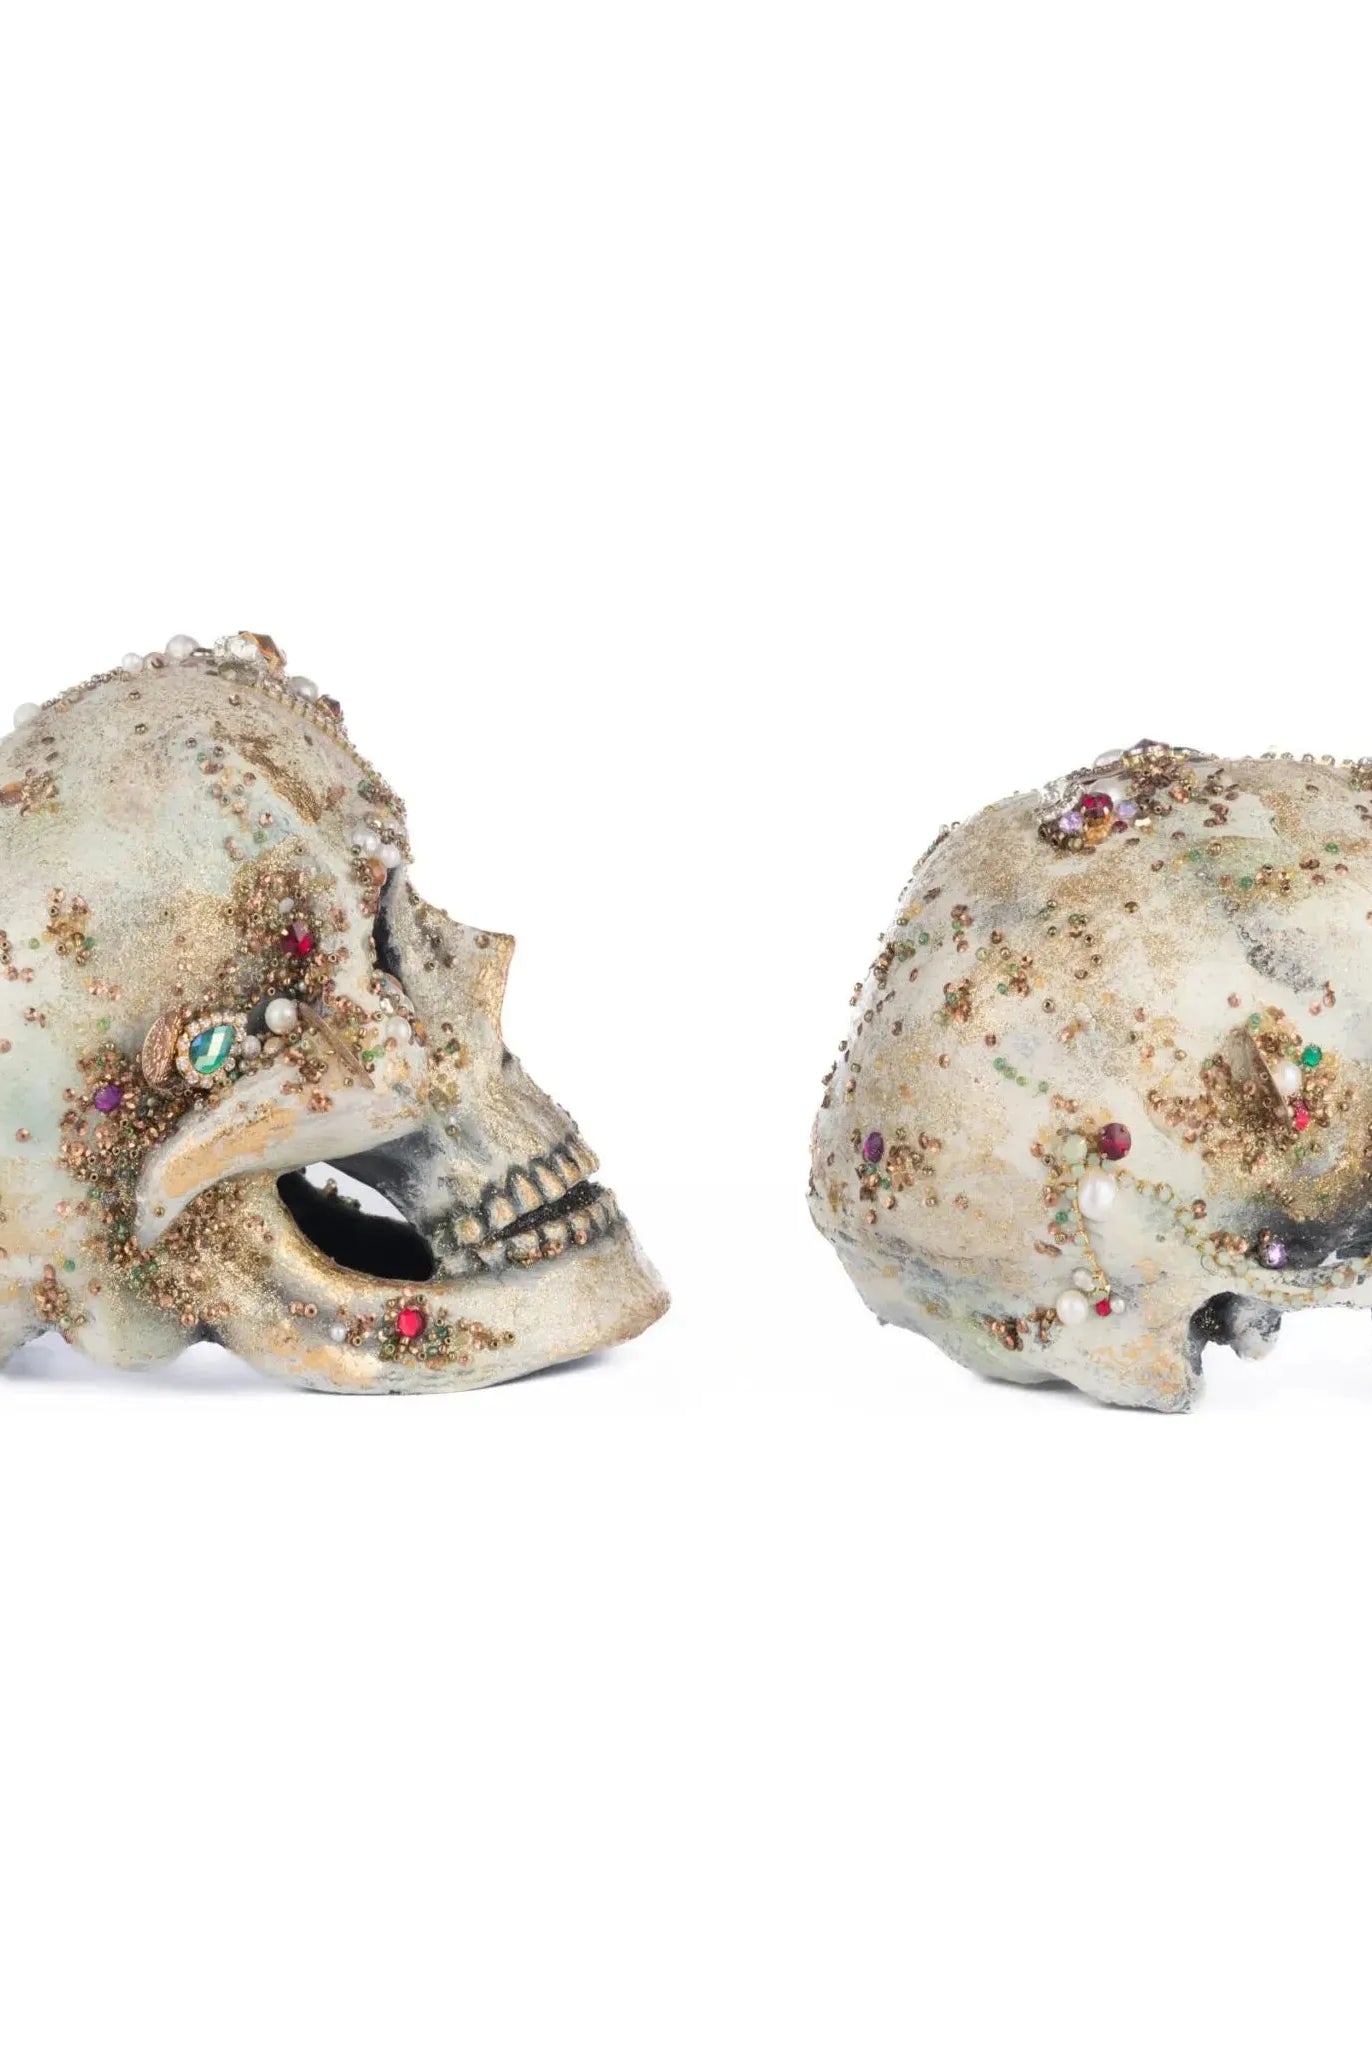 Tabletop Jewel Encrusted Skulls Assortment of 2 - Michelle's aDOORable Creations - Halloween Decor